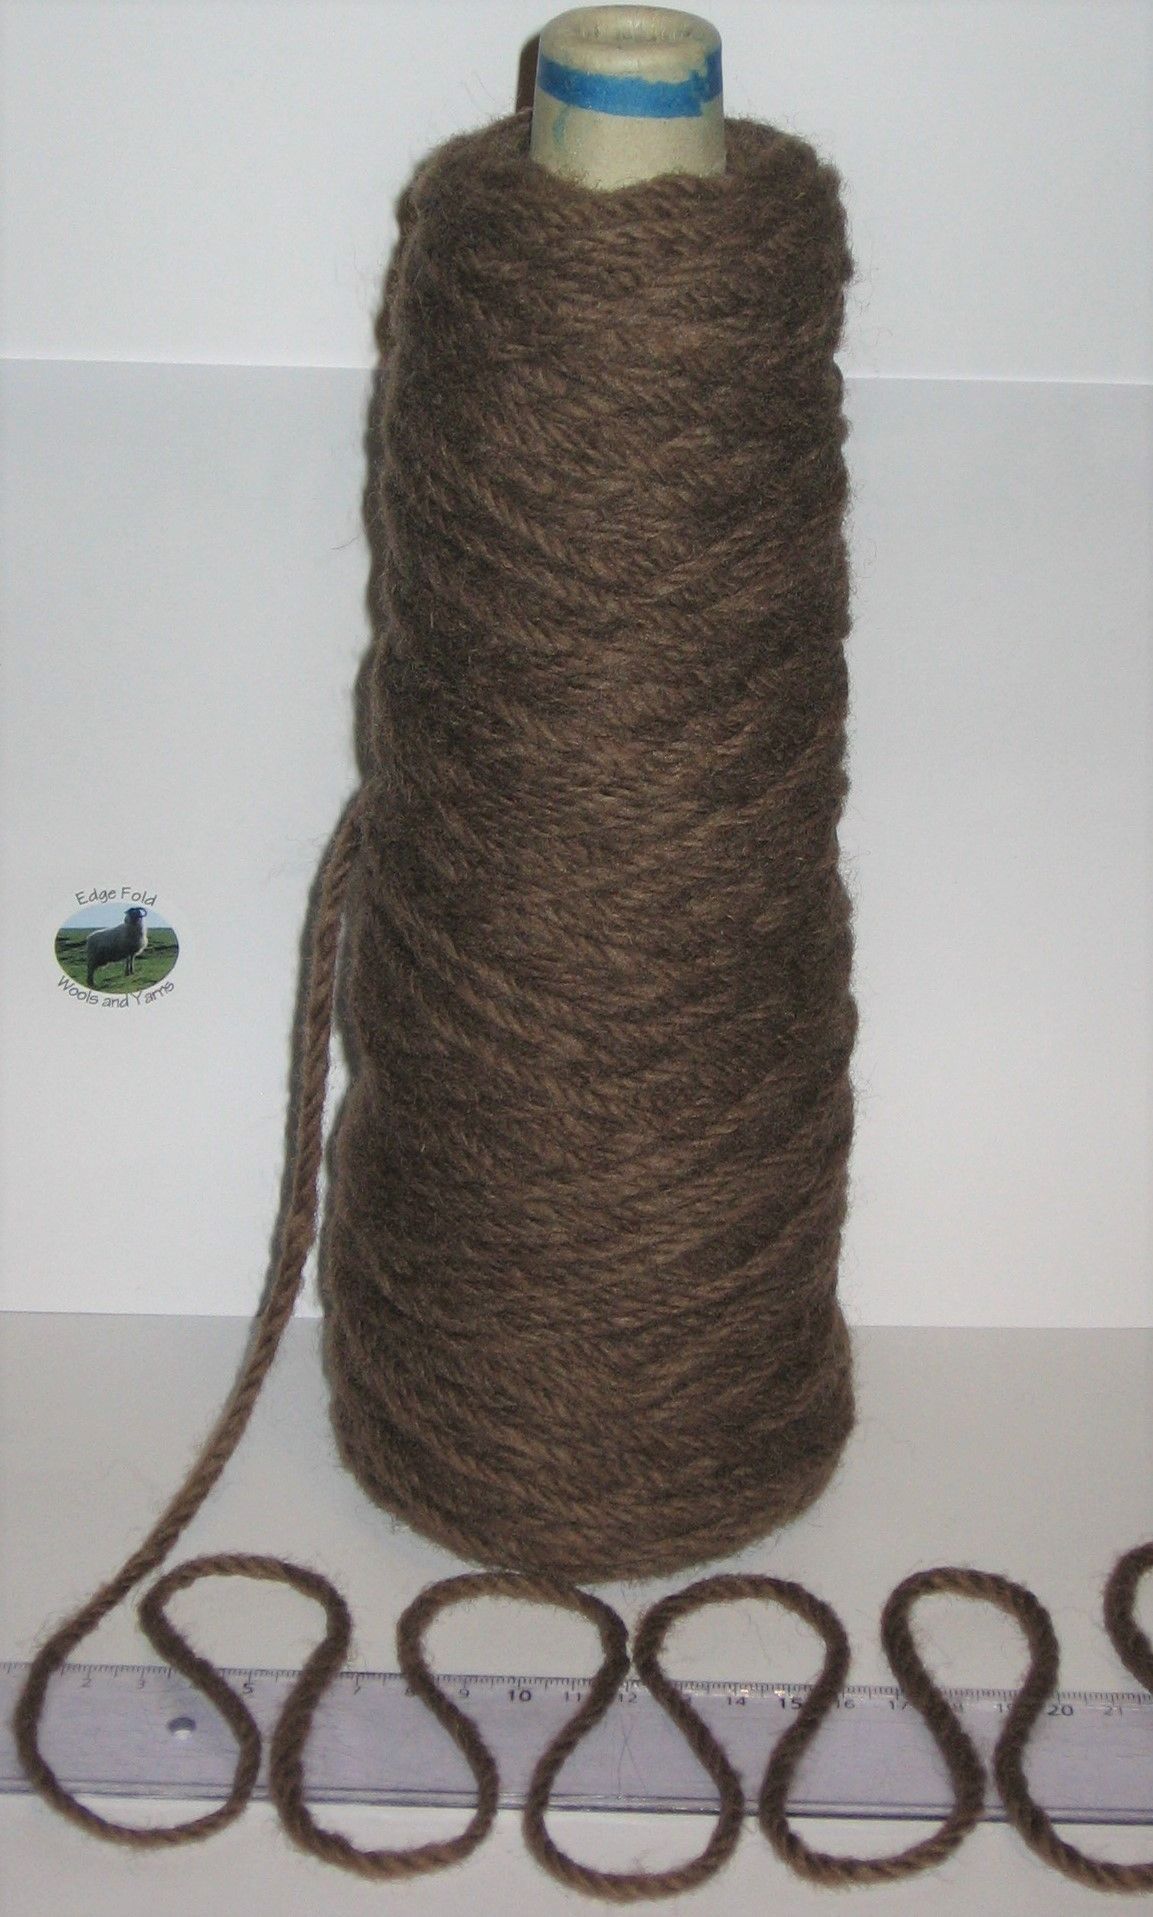 Brown Rug Wool Yarn